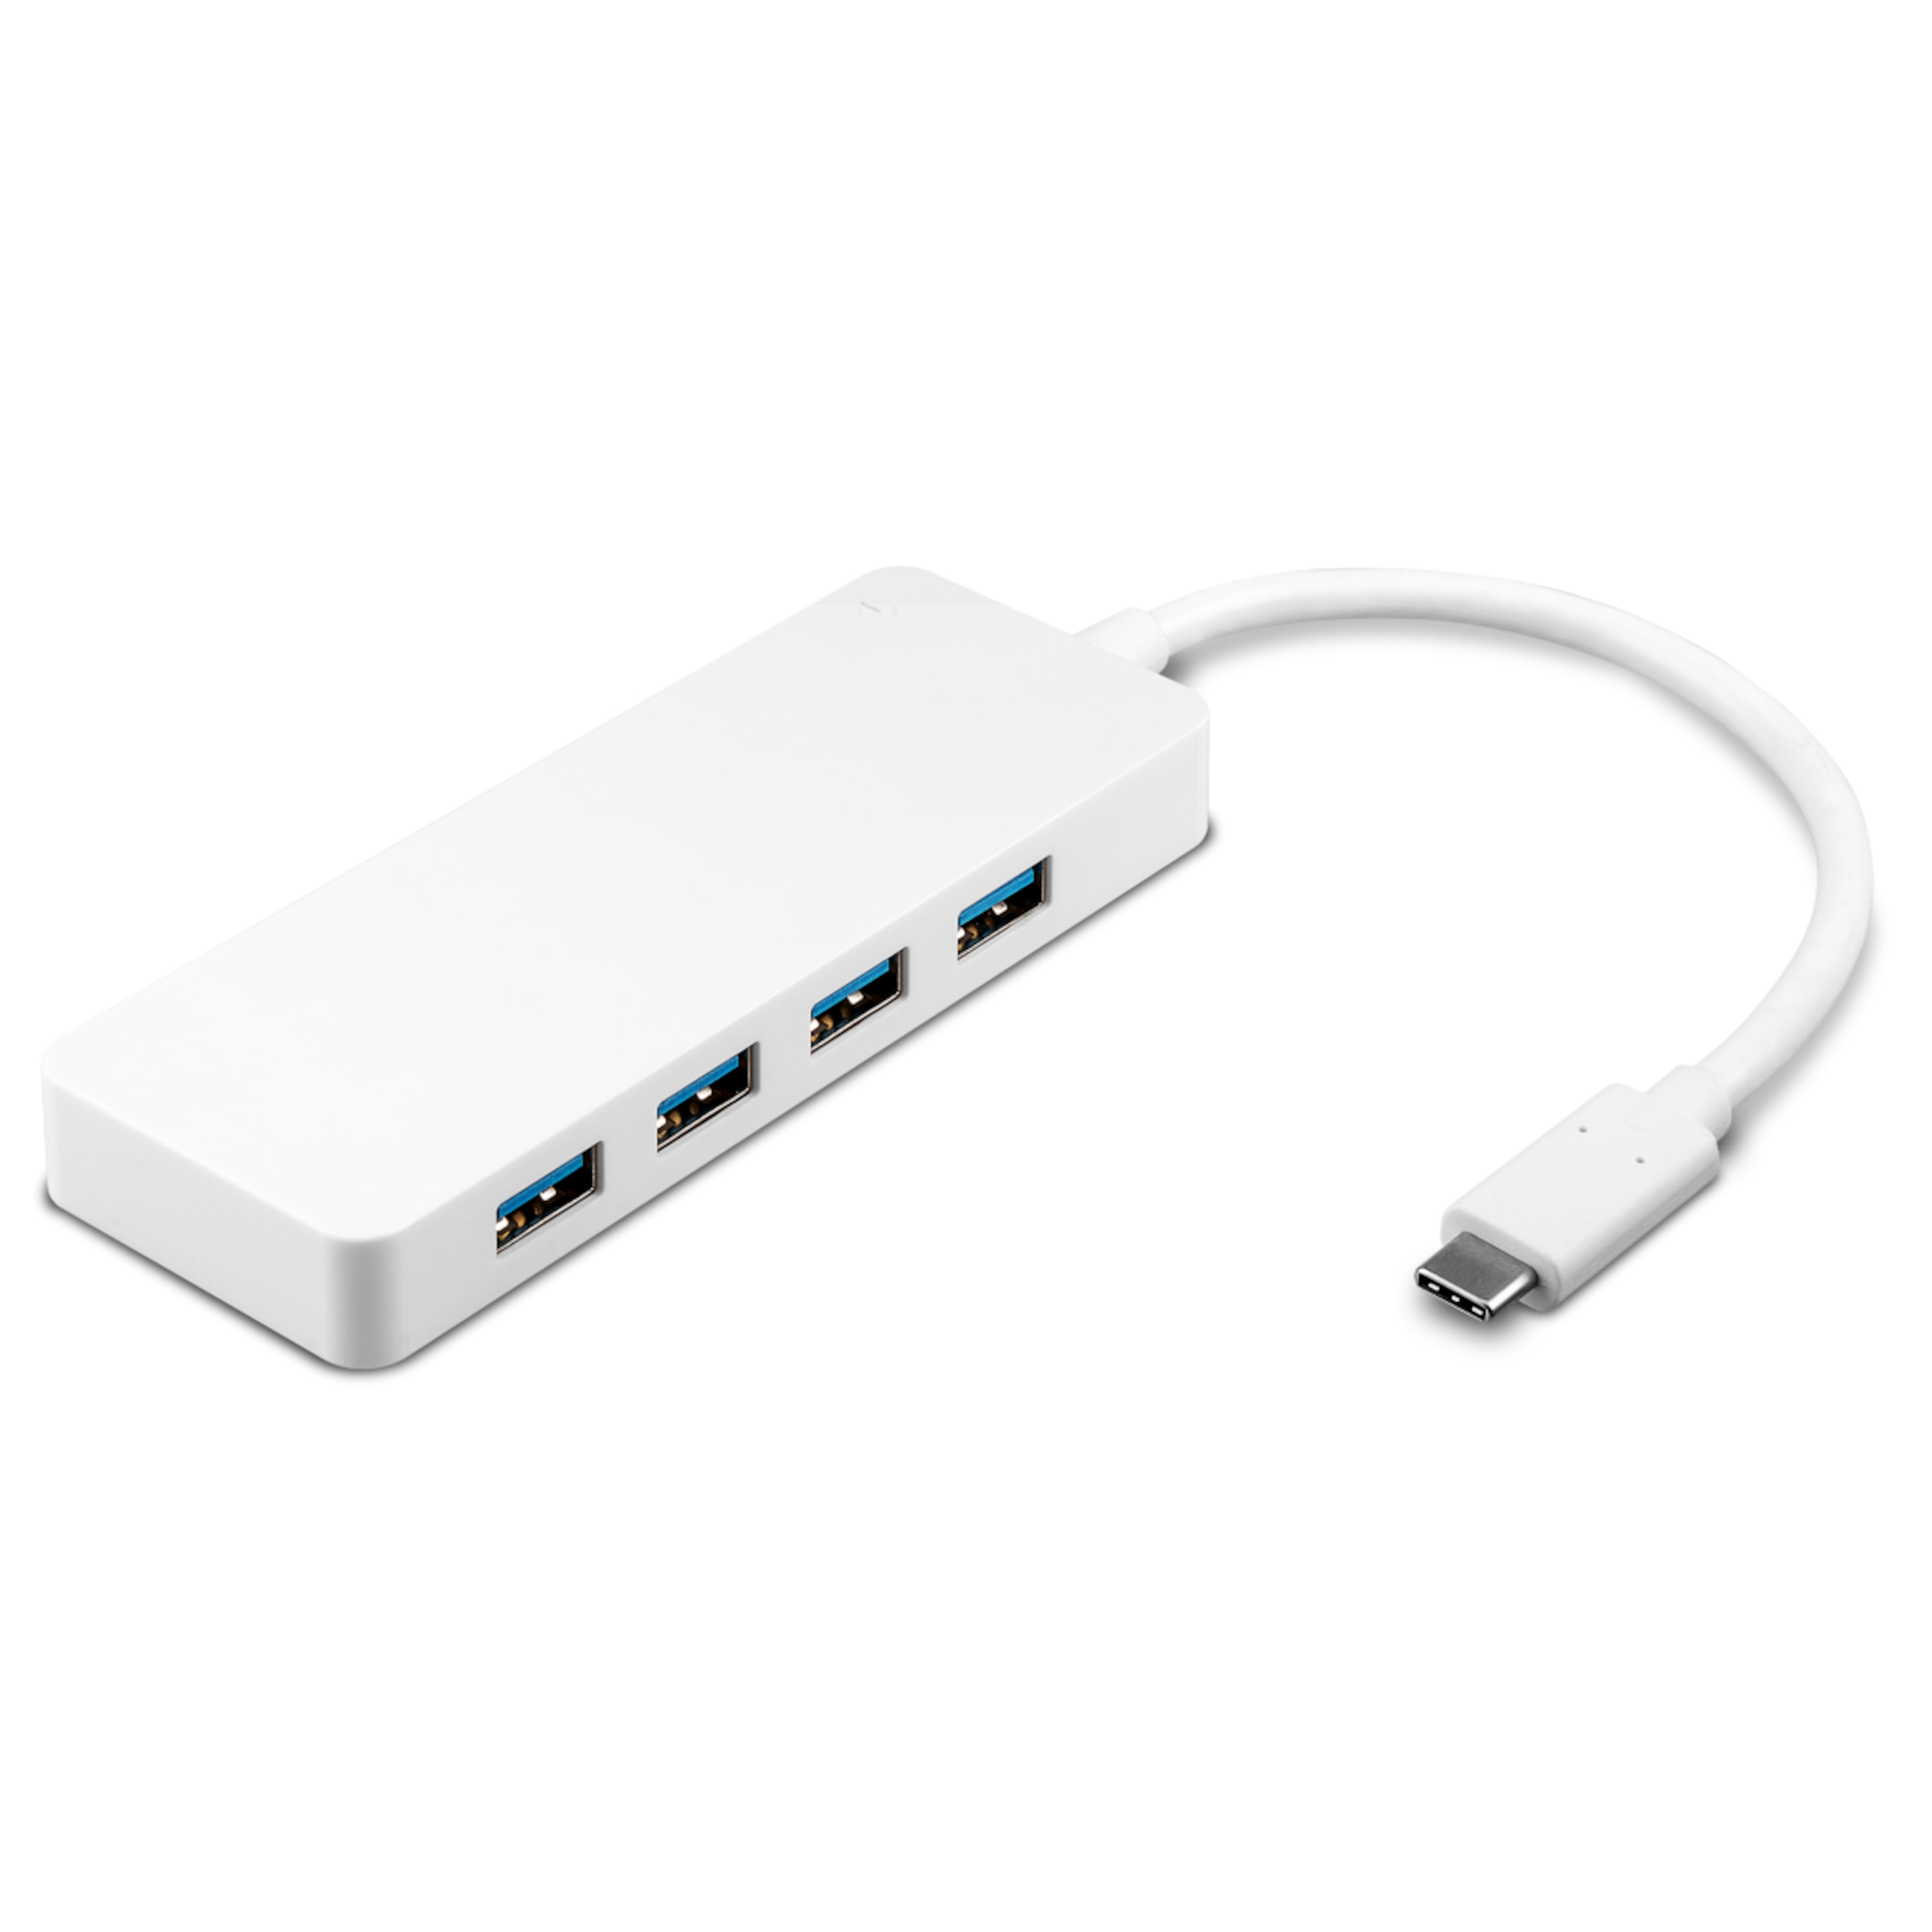 GOOBAY 4-fach USB-C™ Multiport-Adapter, Gleichzeitiger Anschluss von 4x USB 3.0 A Buchse auf USB-C™ Stecker (weiß)